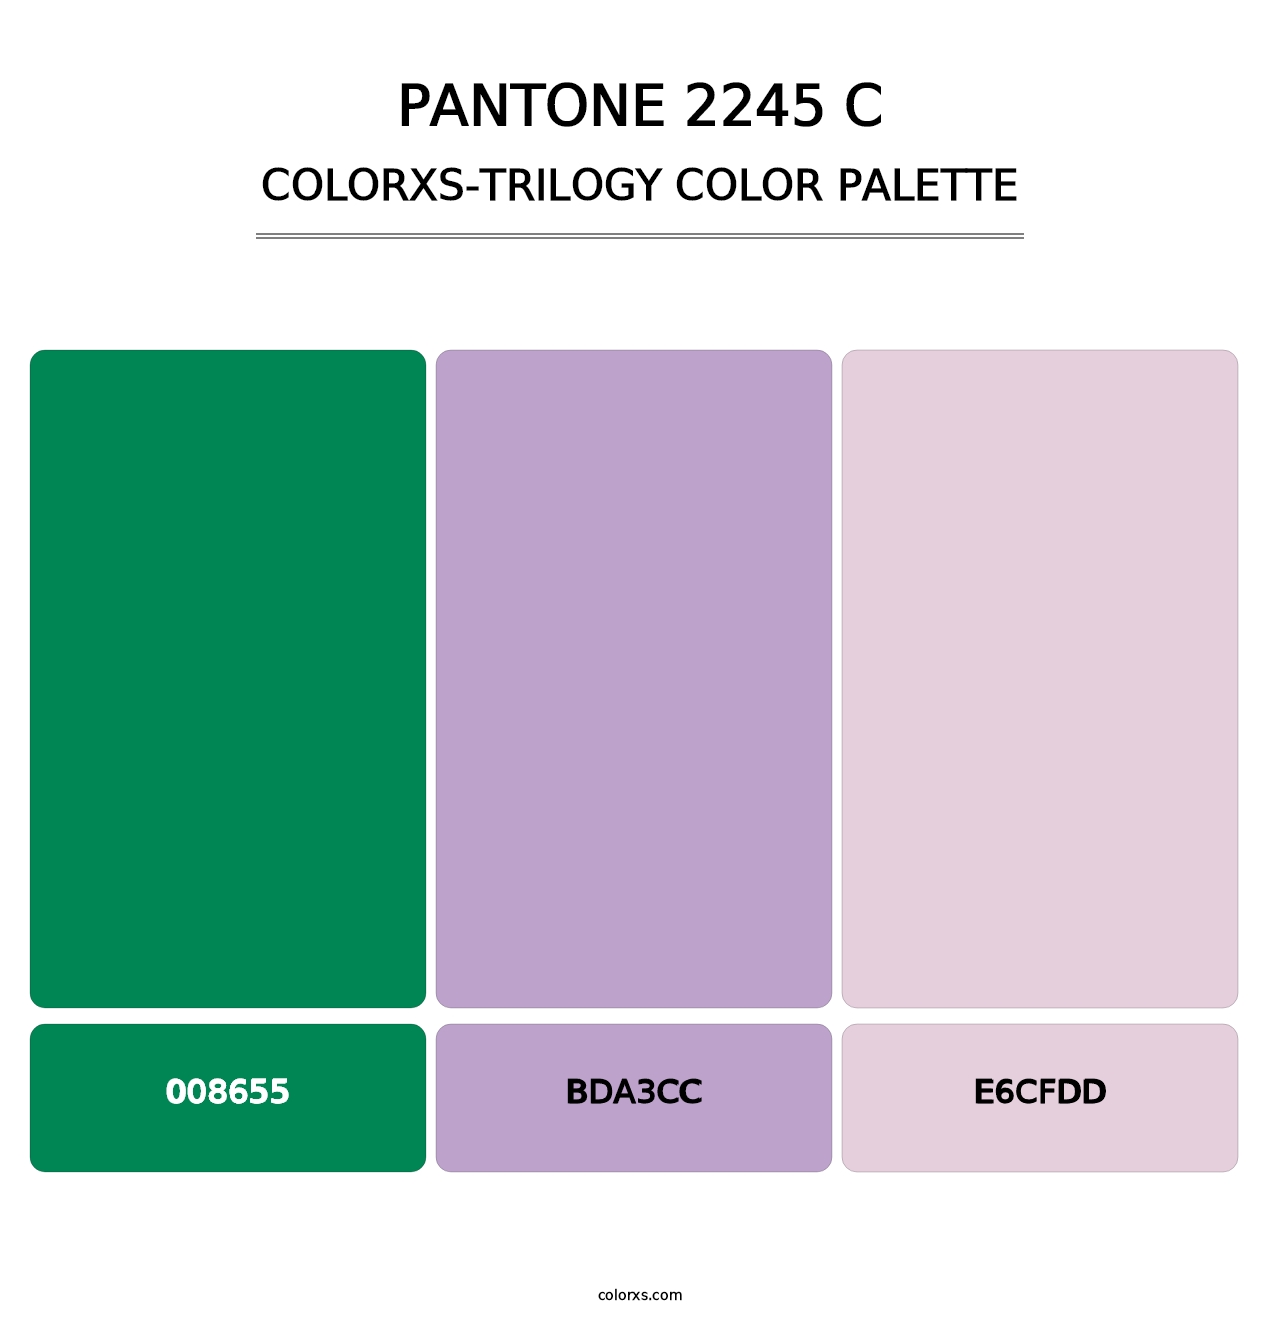 PANTONE 2245 C - Colorxs Trilogy Palette